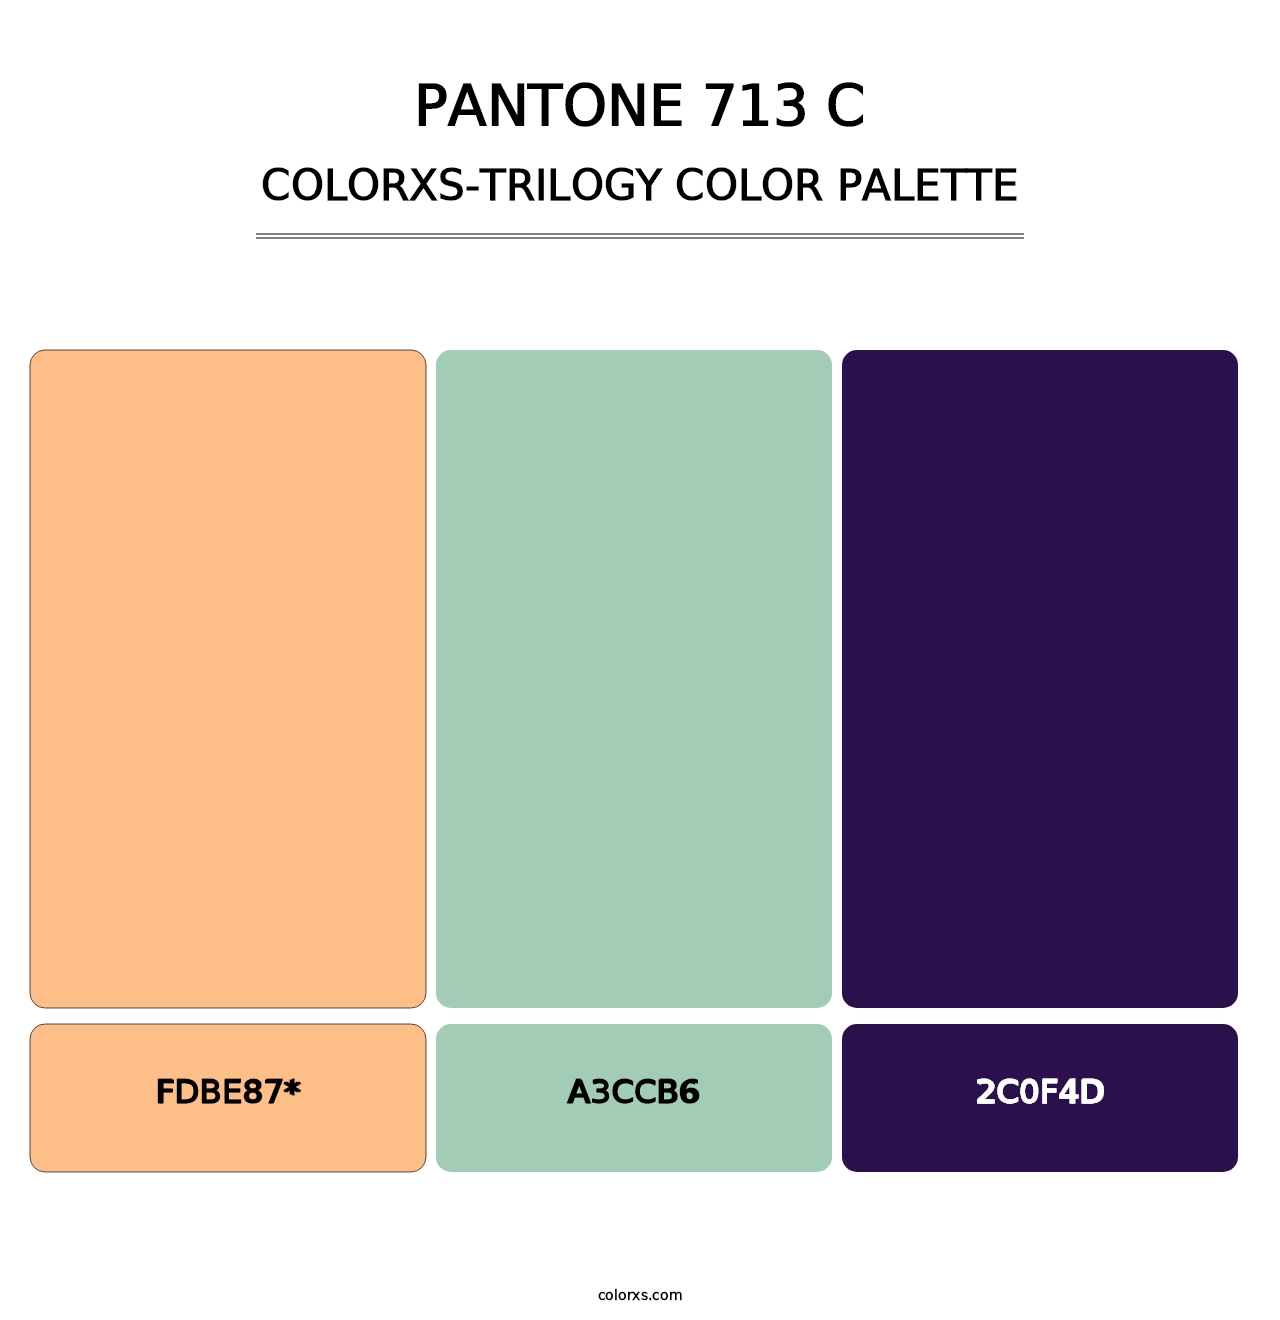 PANTONE 713 C - Colorxs Trilogy Palette